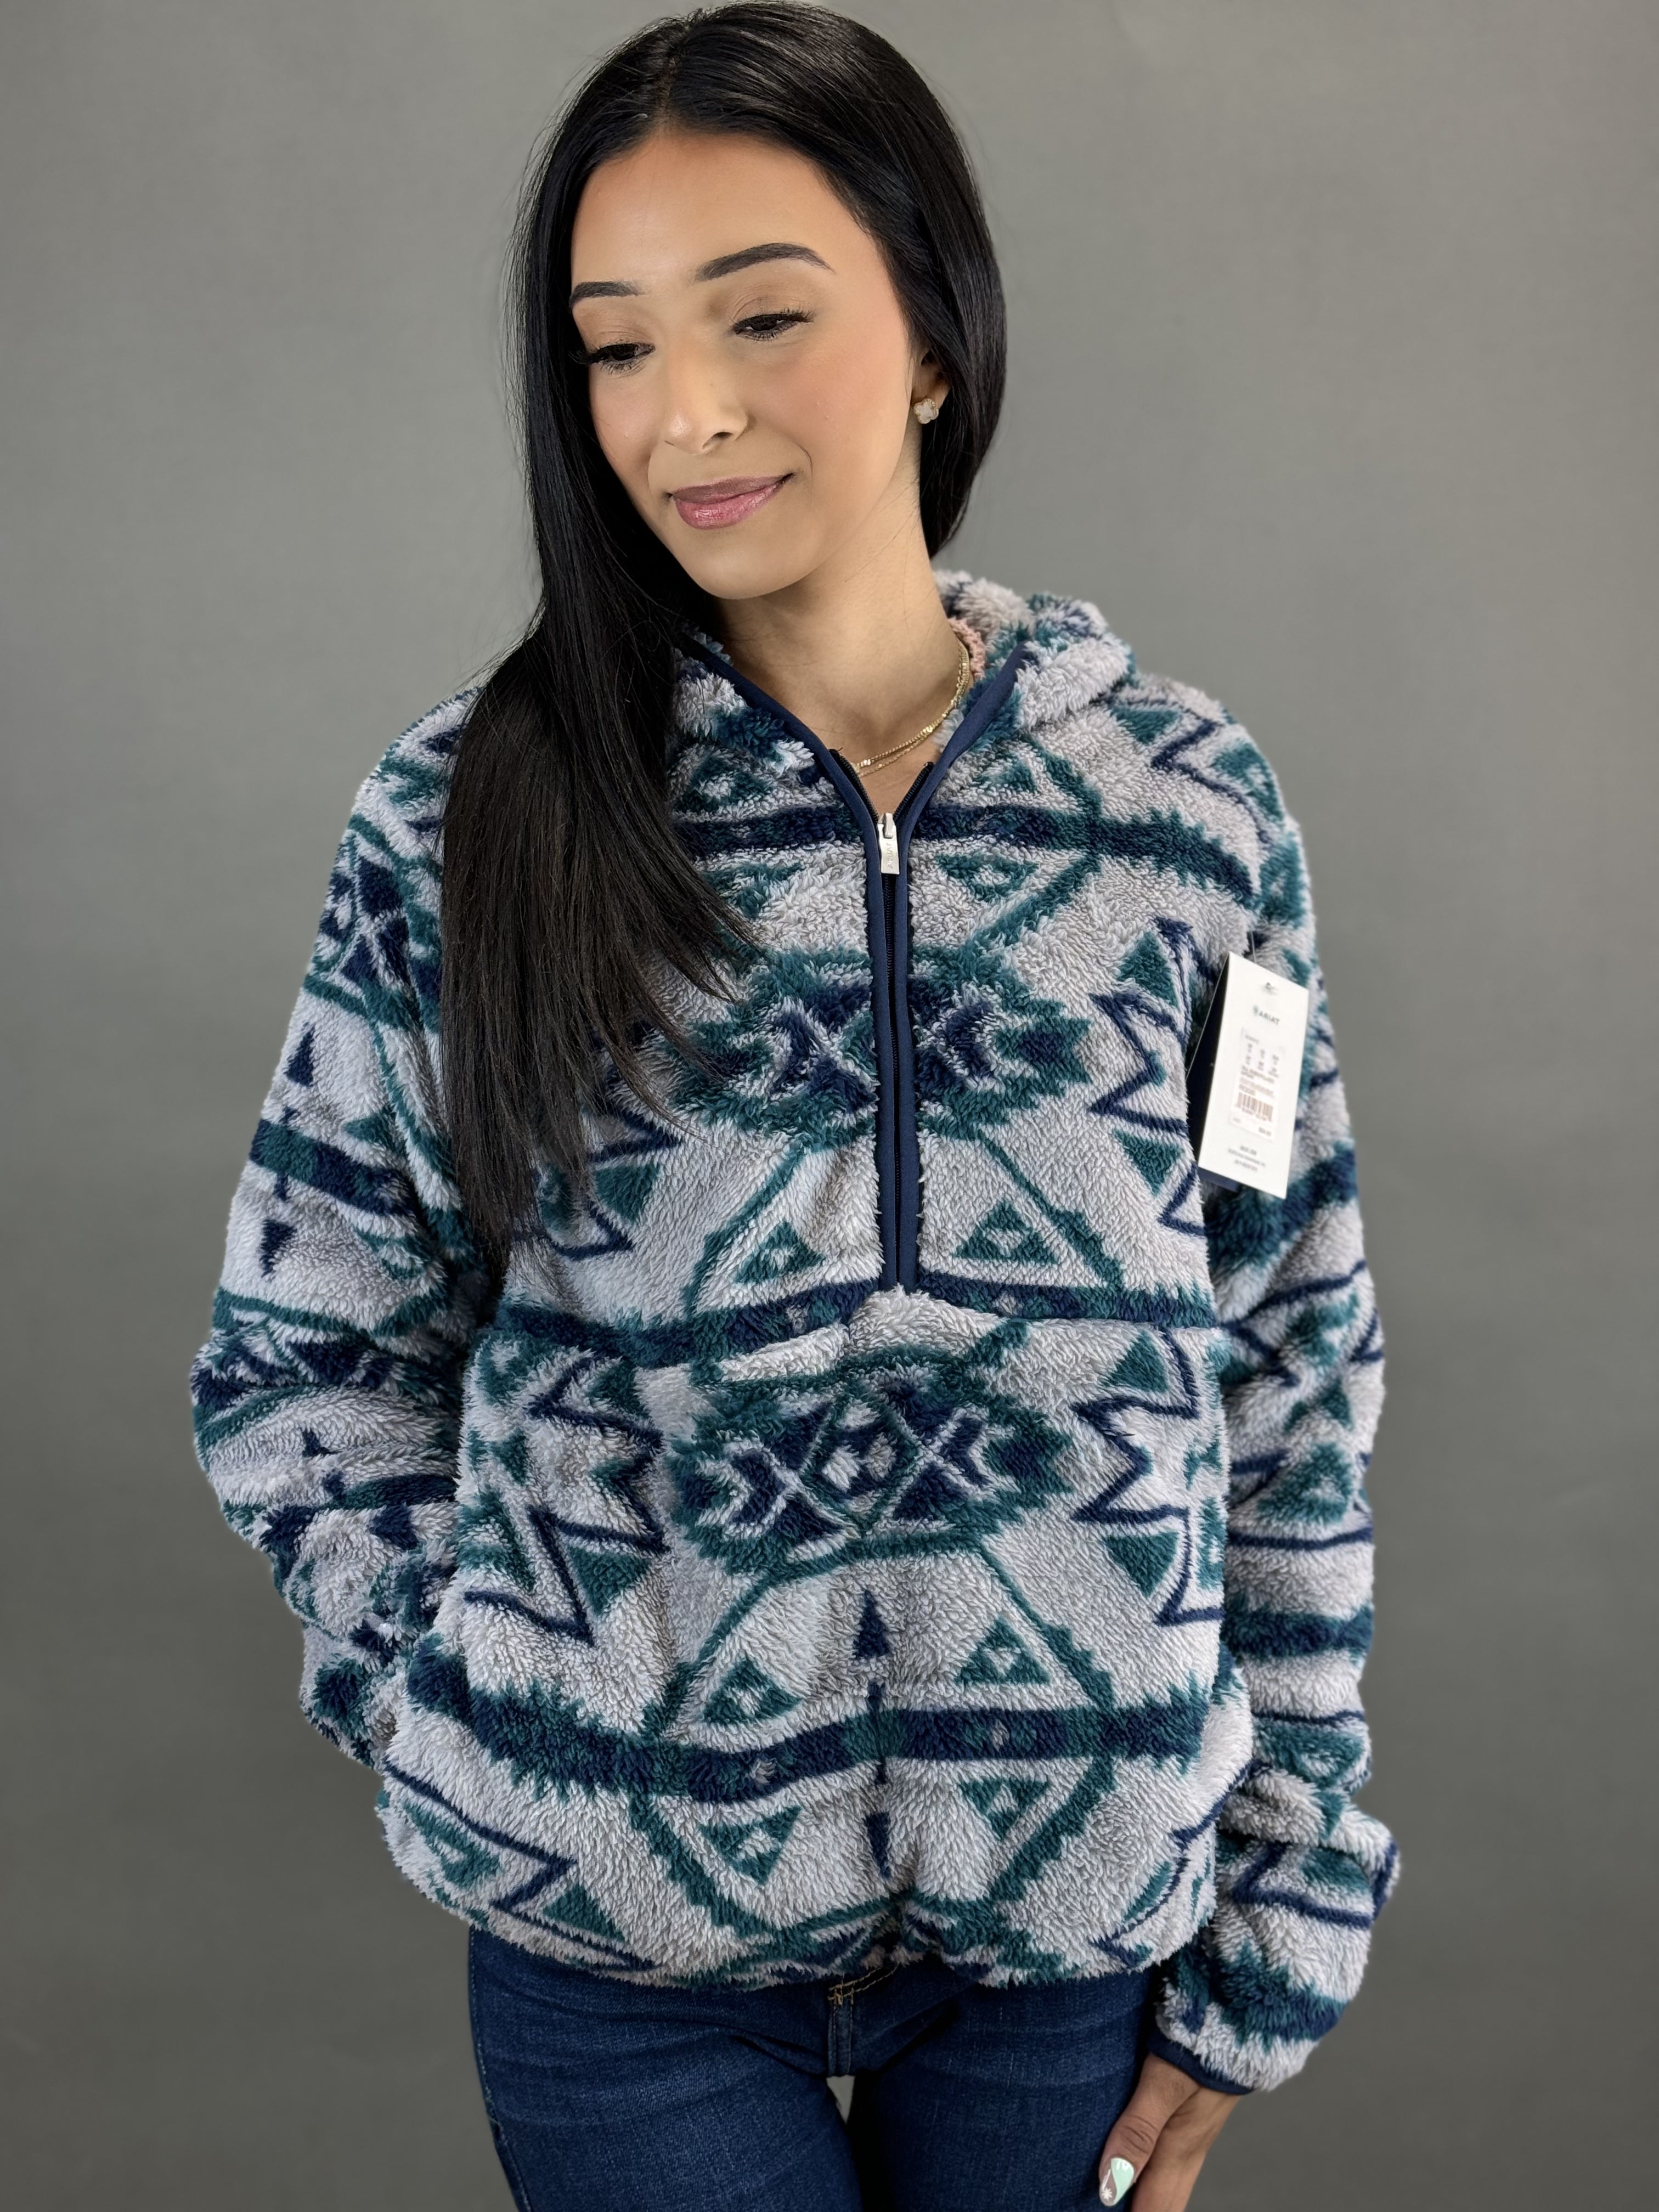 Ariat Berber Fleece Pullover - Women's Sweatshirts in Plainsview Print